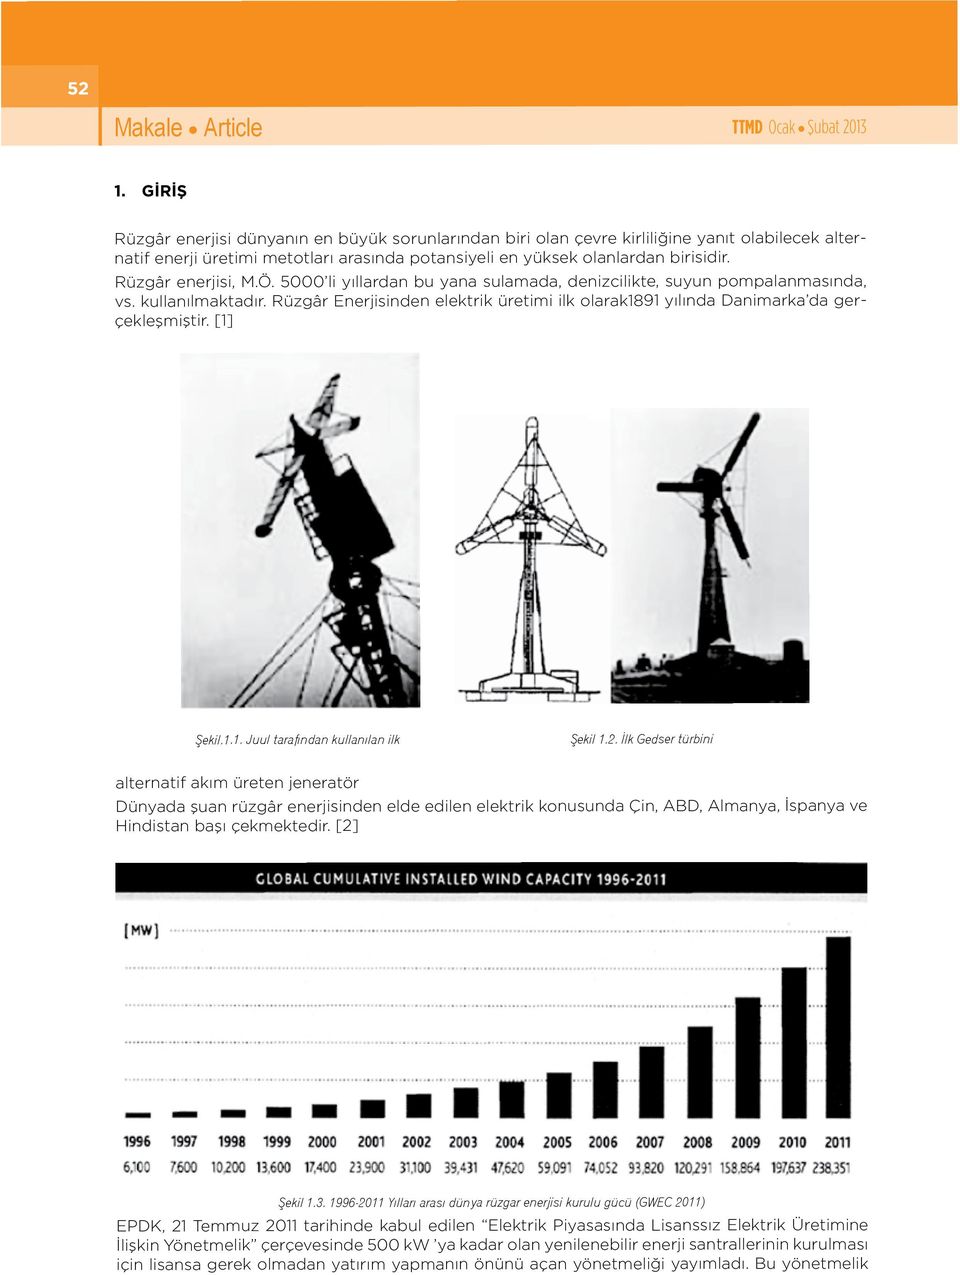 Rüzgâr enerjisi, M.Ö. 5000 li yıllardan bu yana sulaada, denizcilikte, suyun popalanasında, vs. kullanılaktadır. Rüzgâr Enerjisinden elektrik üretii ilk olarak1891 yılında Daniarka da gerçekleşiştir.